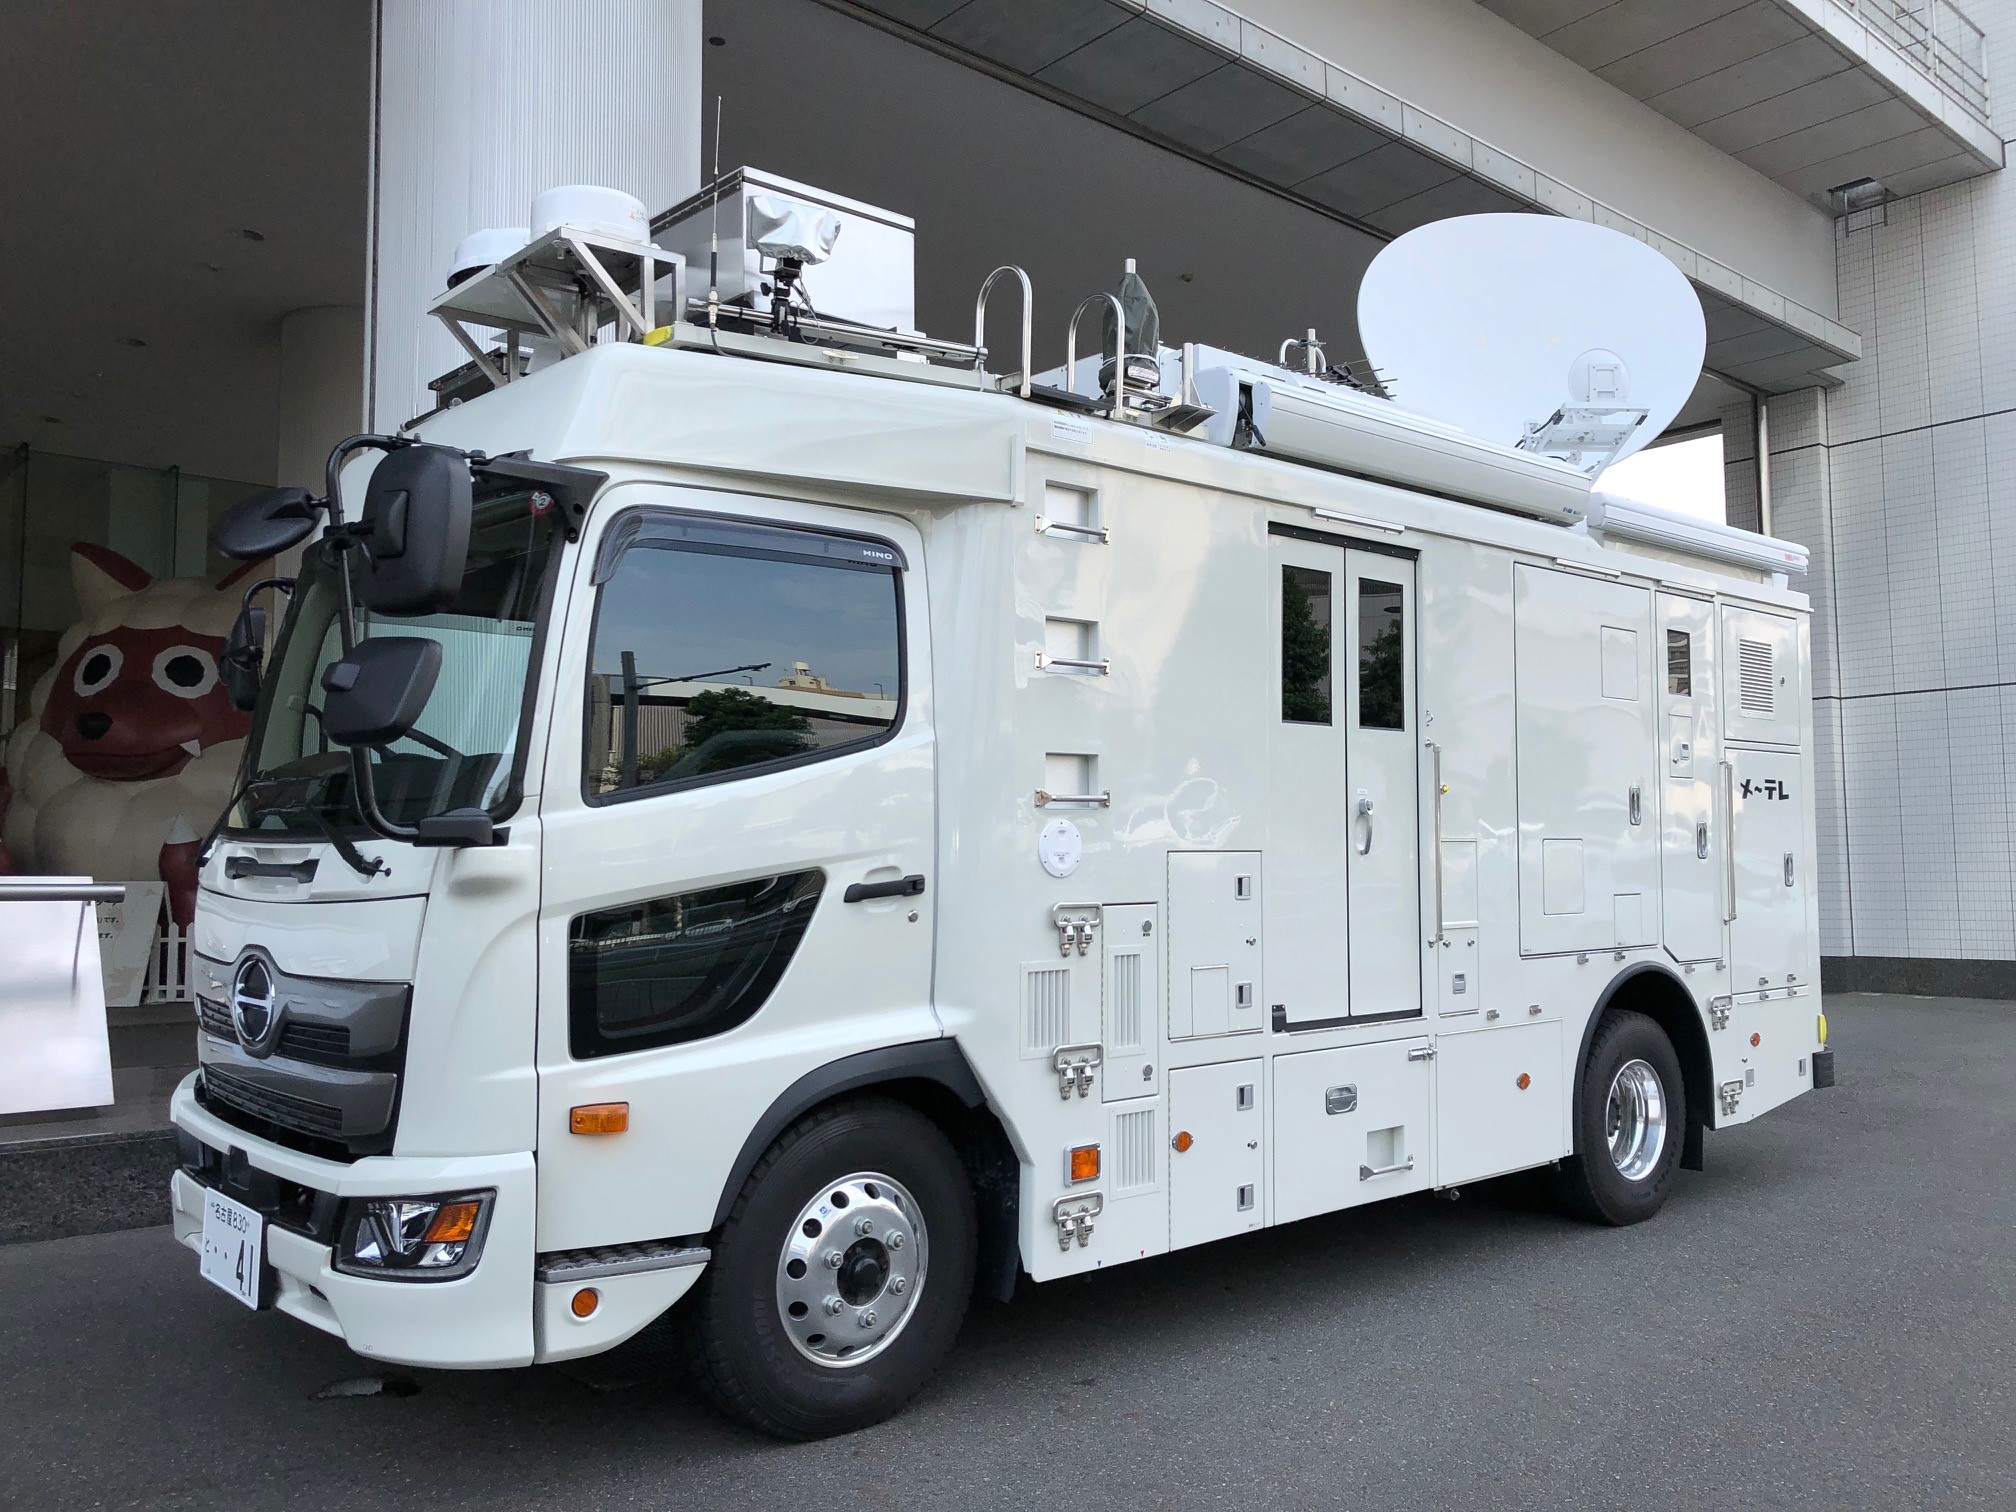 メ テレ 在名民放局で初めて 4k対応衛星中継車 を導入 ７月２１日 火 から運用開始 メ テレのプレスリリース